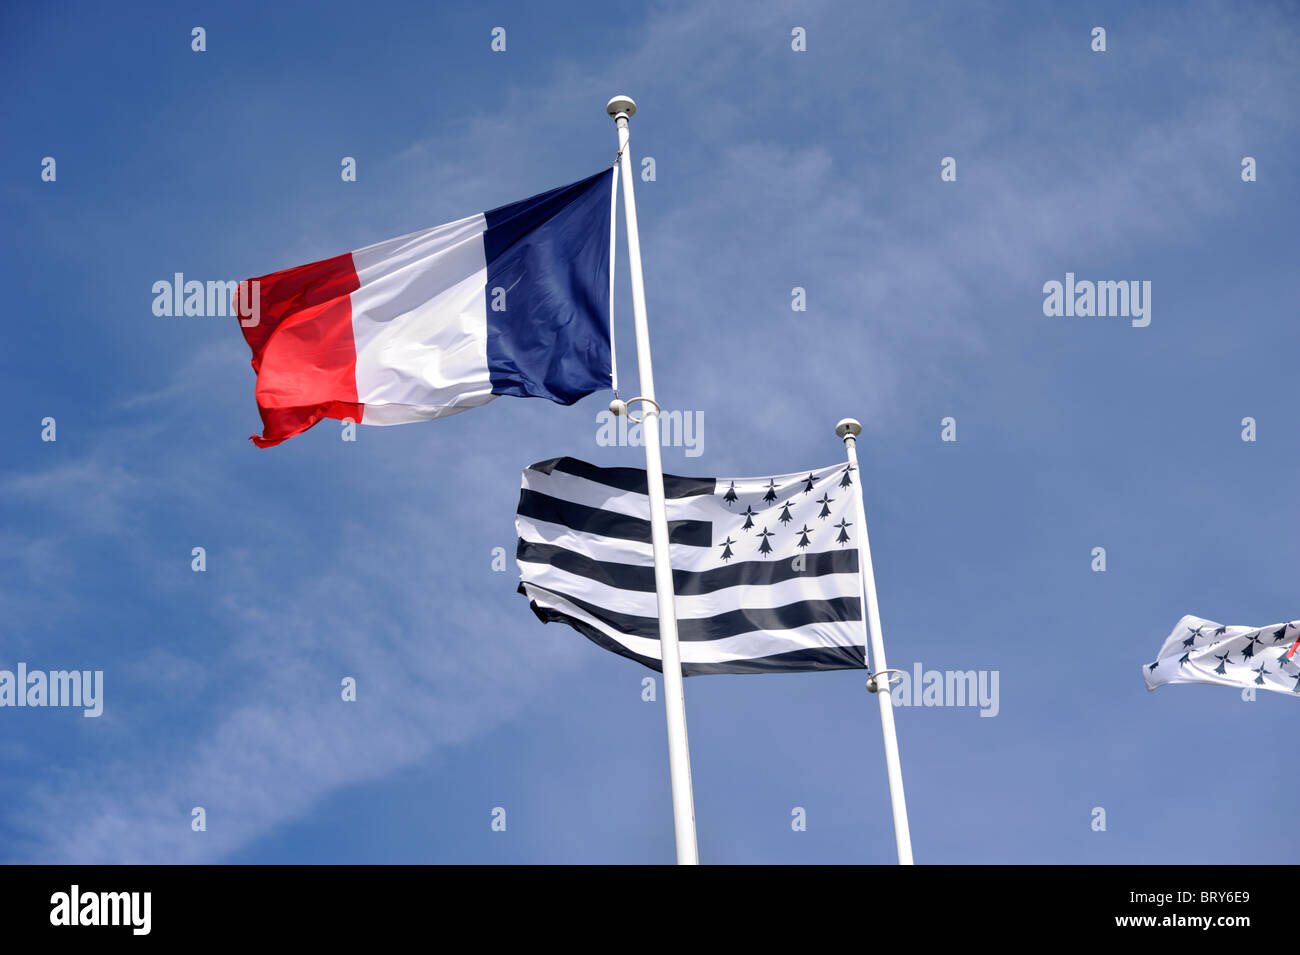 proposition d'un drapeau breton : r/placefrance